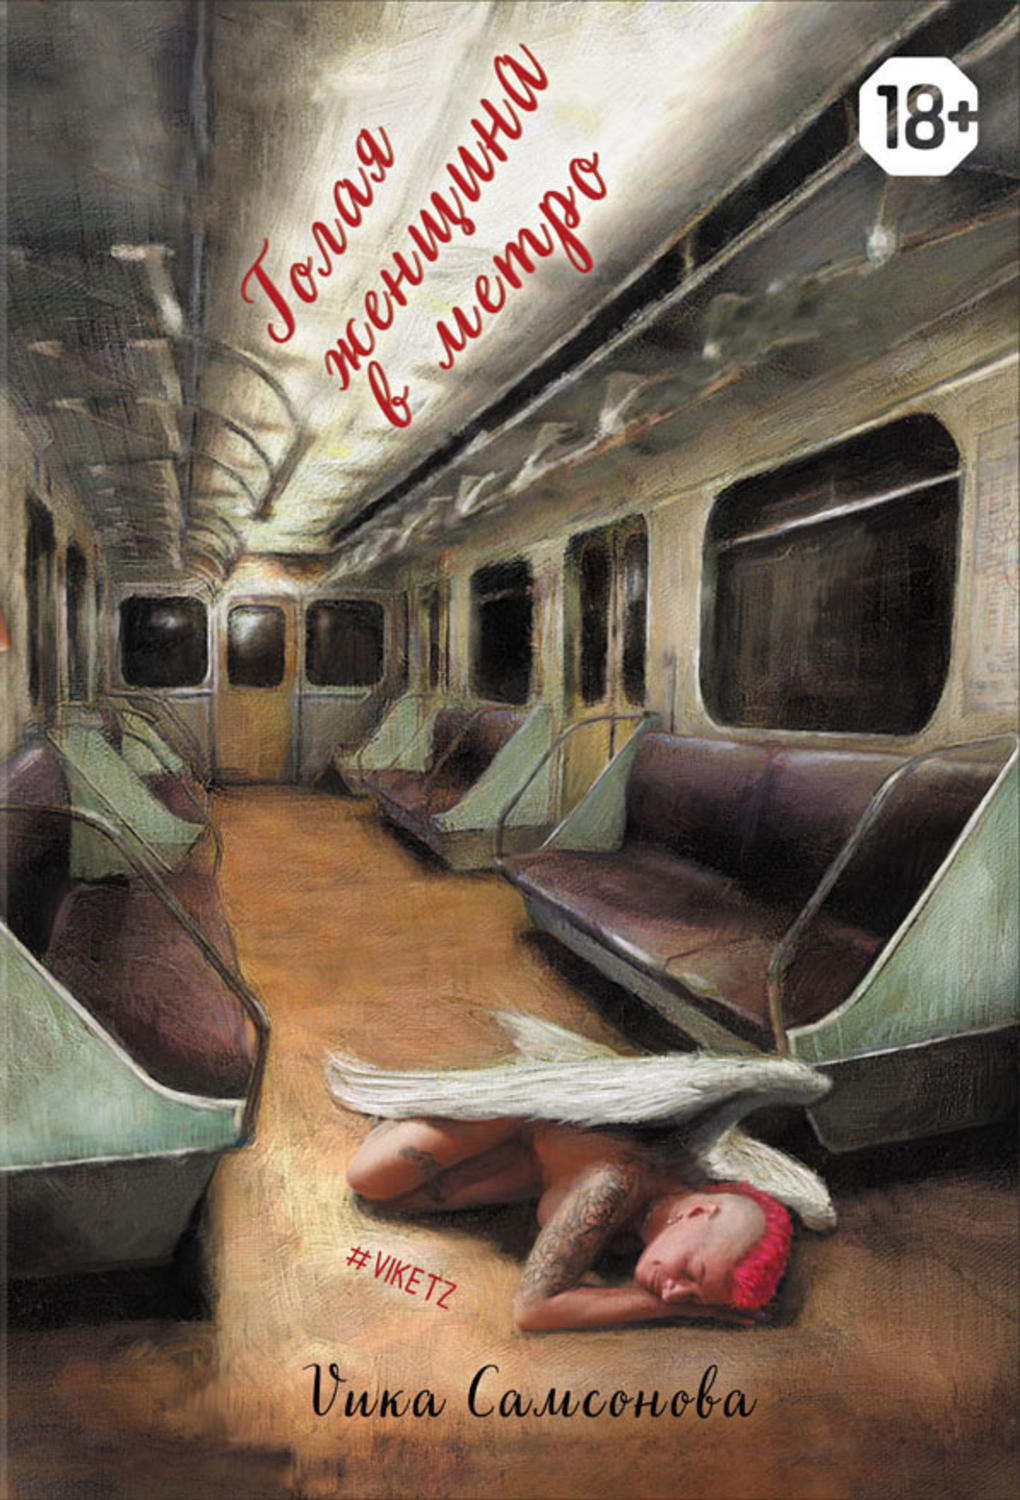 Отзывы о книге «Голая женщина в метро», рецензии на книгу , рейтинг в  библиотеке Литрес